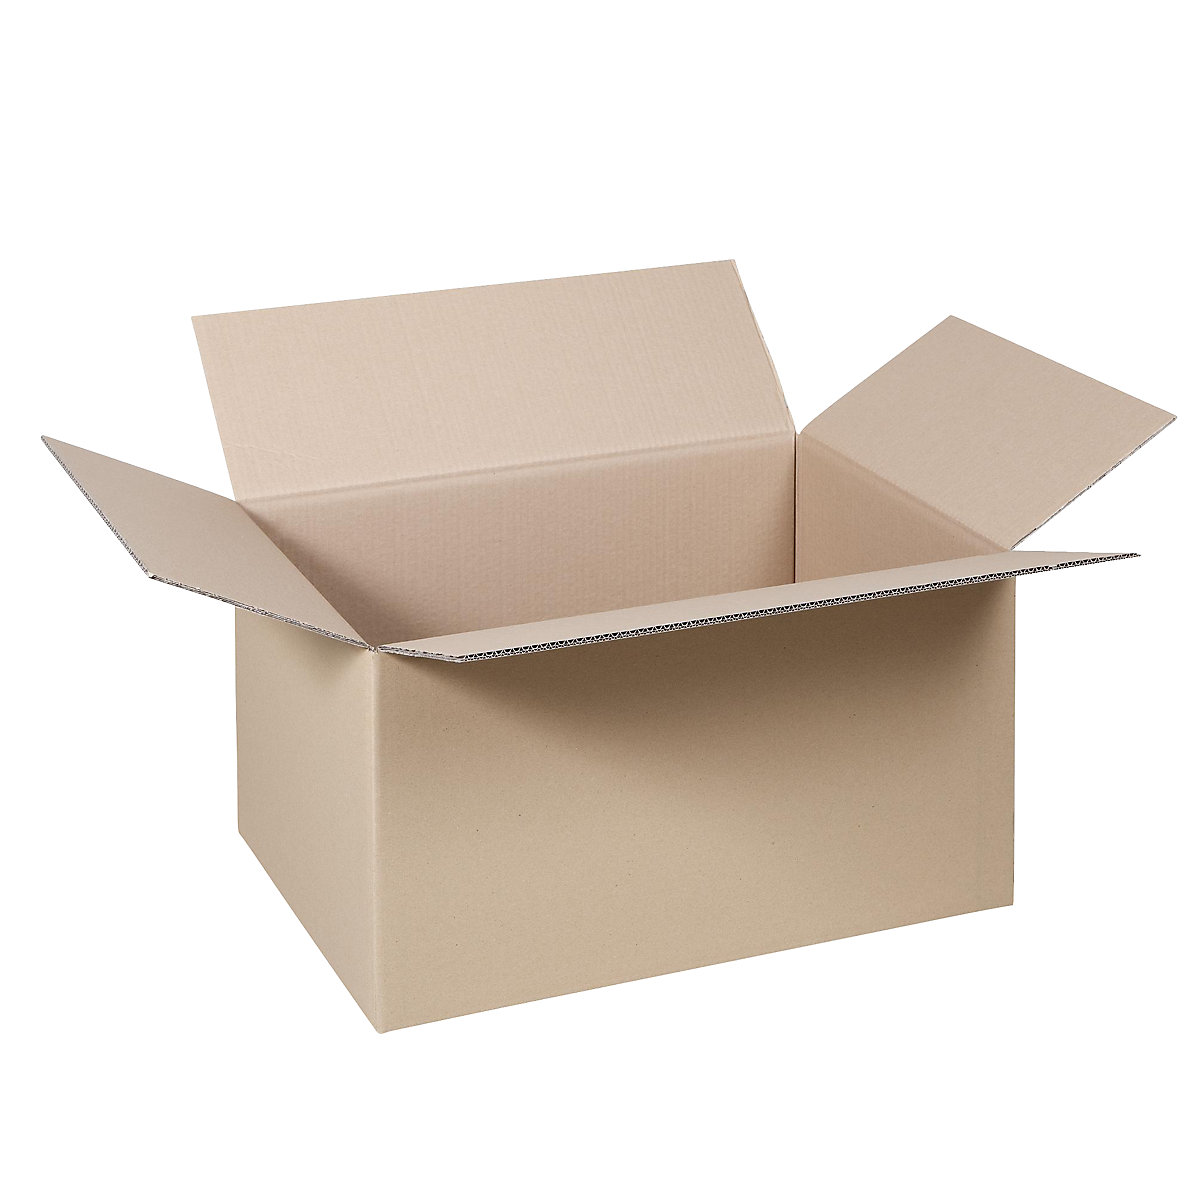 Cutie de carton pliantă, FEFCO 0201, cu 2 straturi de carton ondulat, dimensiuni interioare 500 x 300 x 300 mm, amb. 50 buc.-33